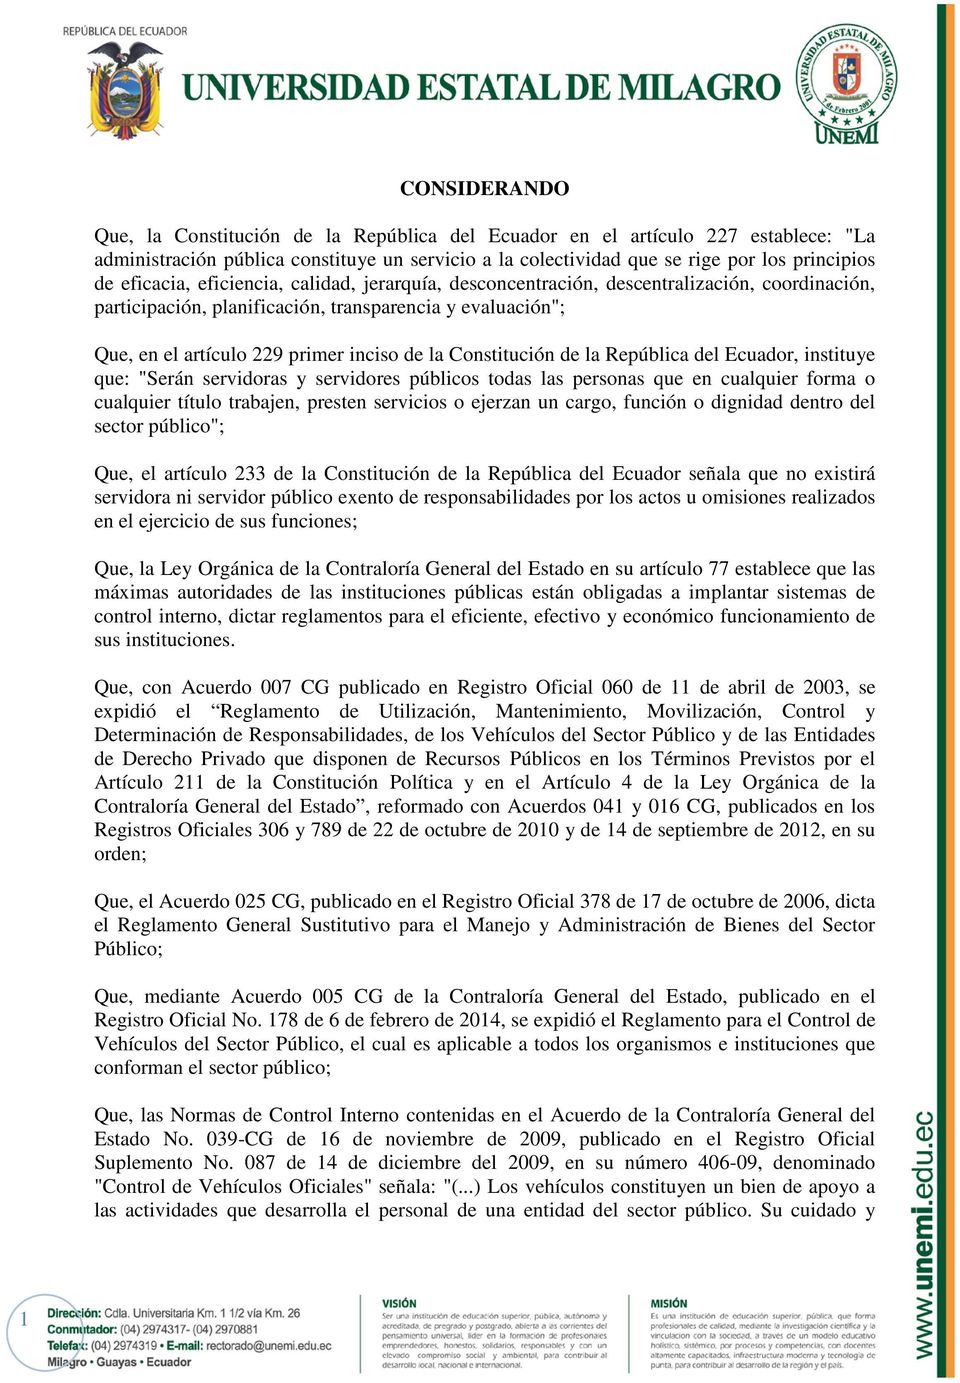 Constitución de la República del Ecuador, instituye que: "Serán servidoras y servidores públicos todas las personas que en cualquier forma o cualquier título trabajen, presten servicios o ejerzan un